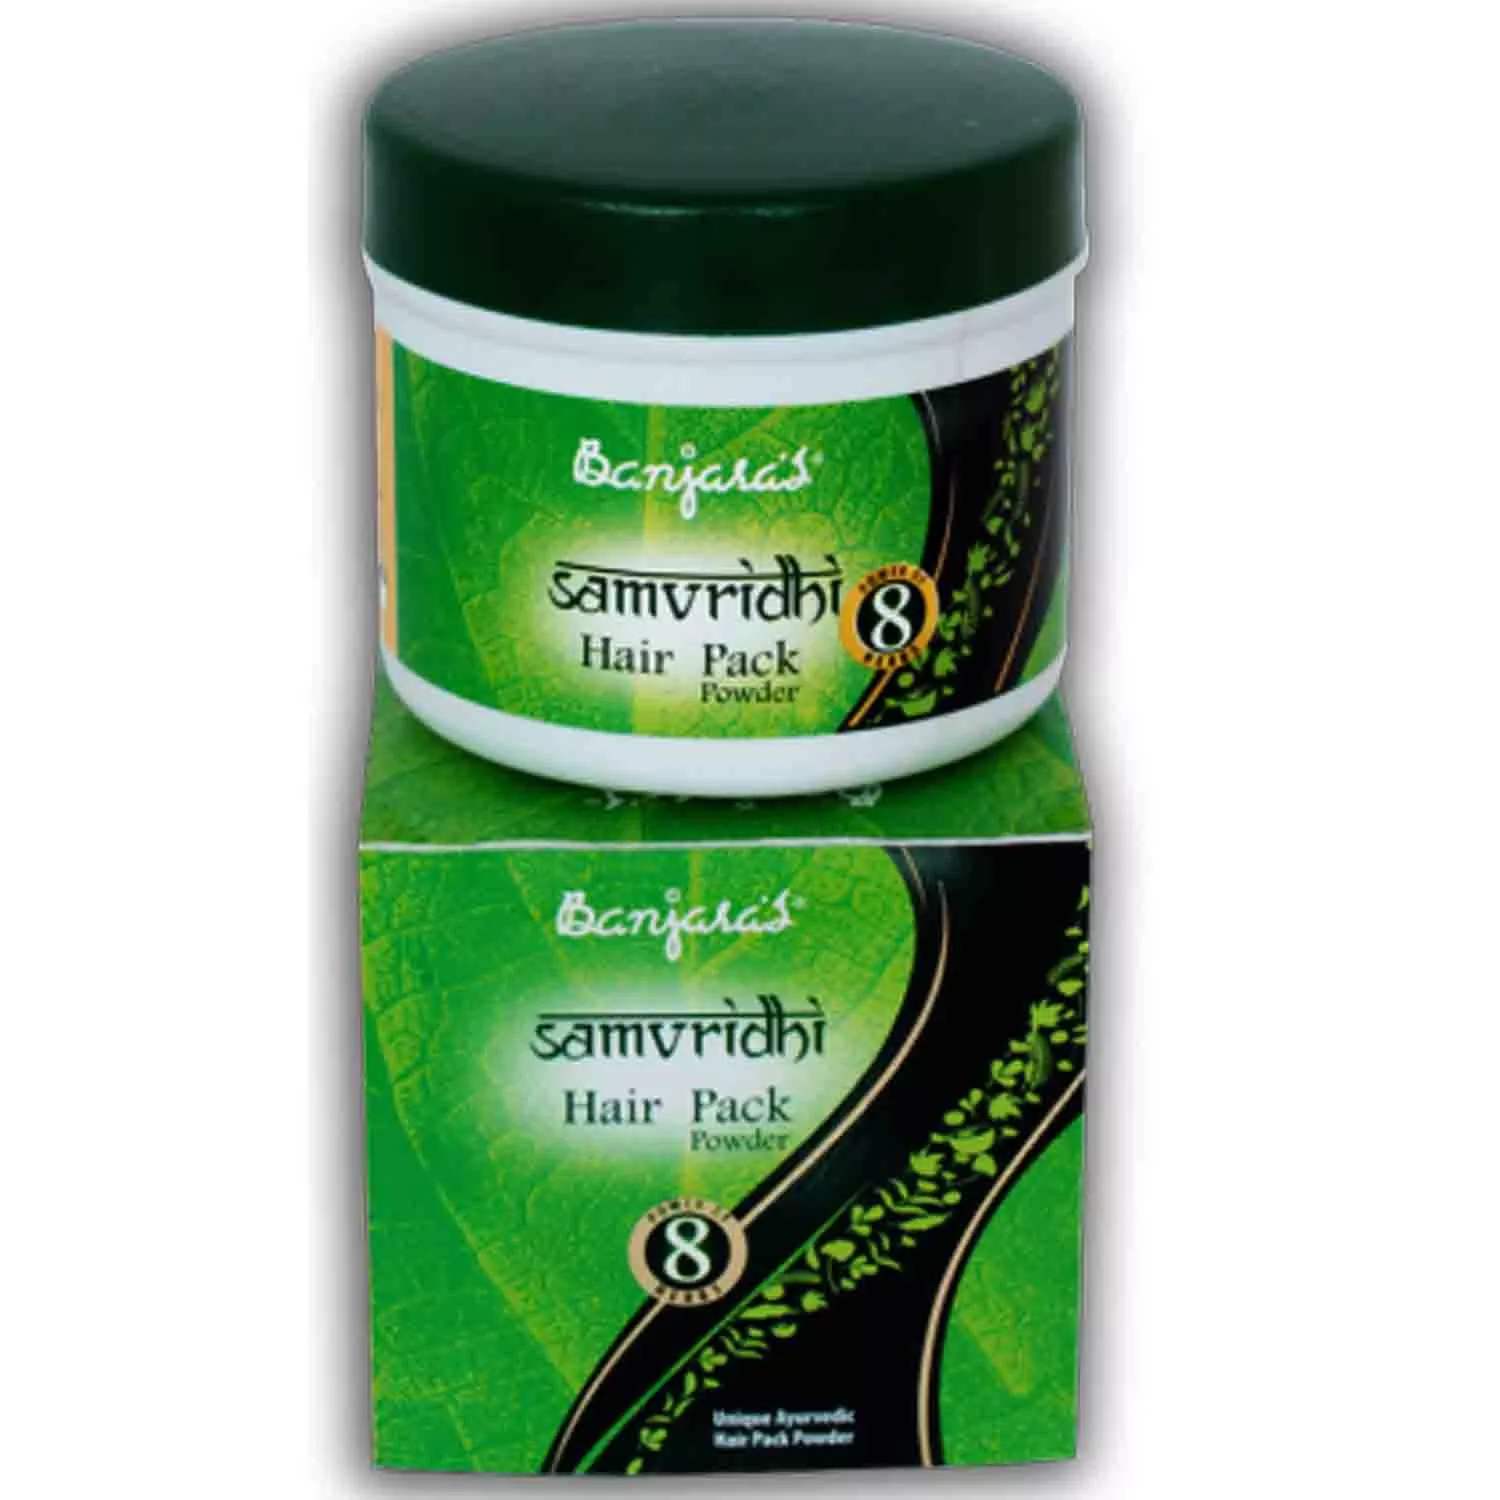 Banjara's Samvridhi Hair Pack Powder